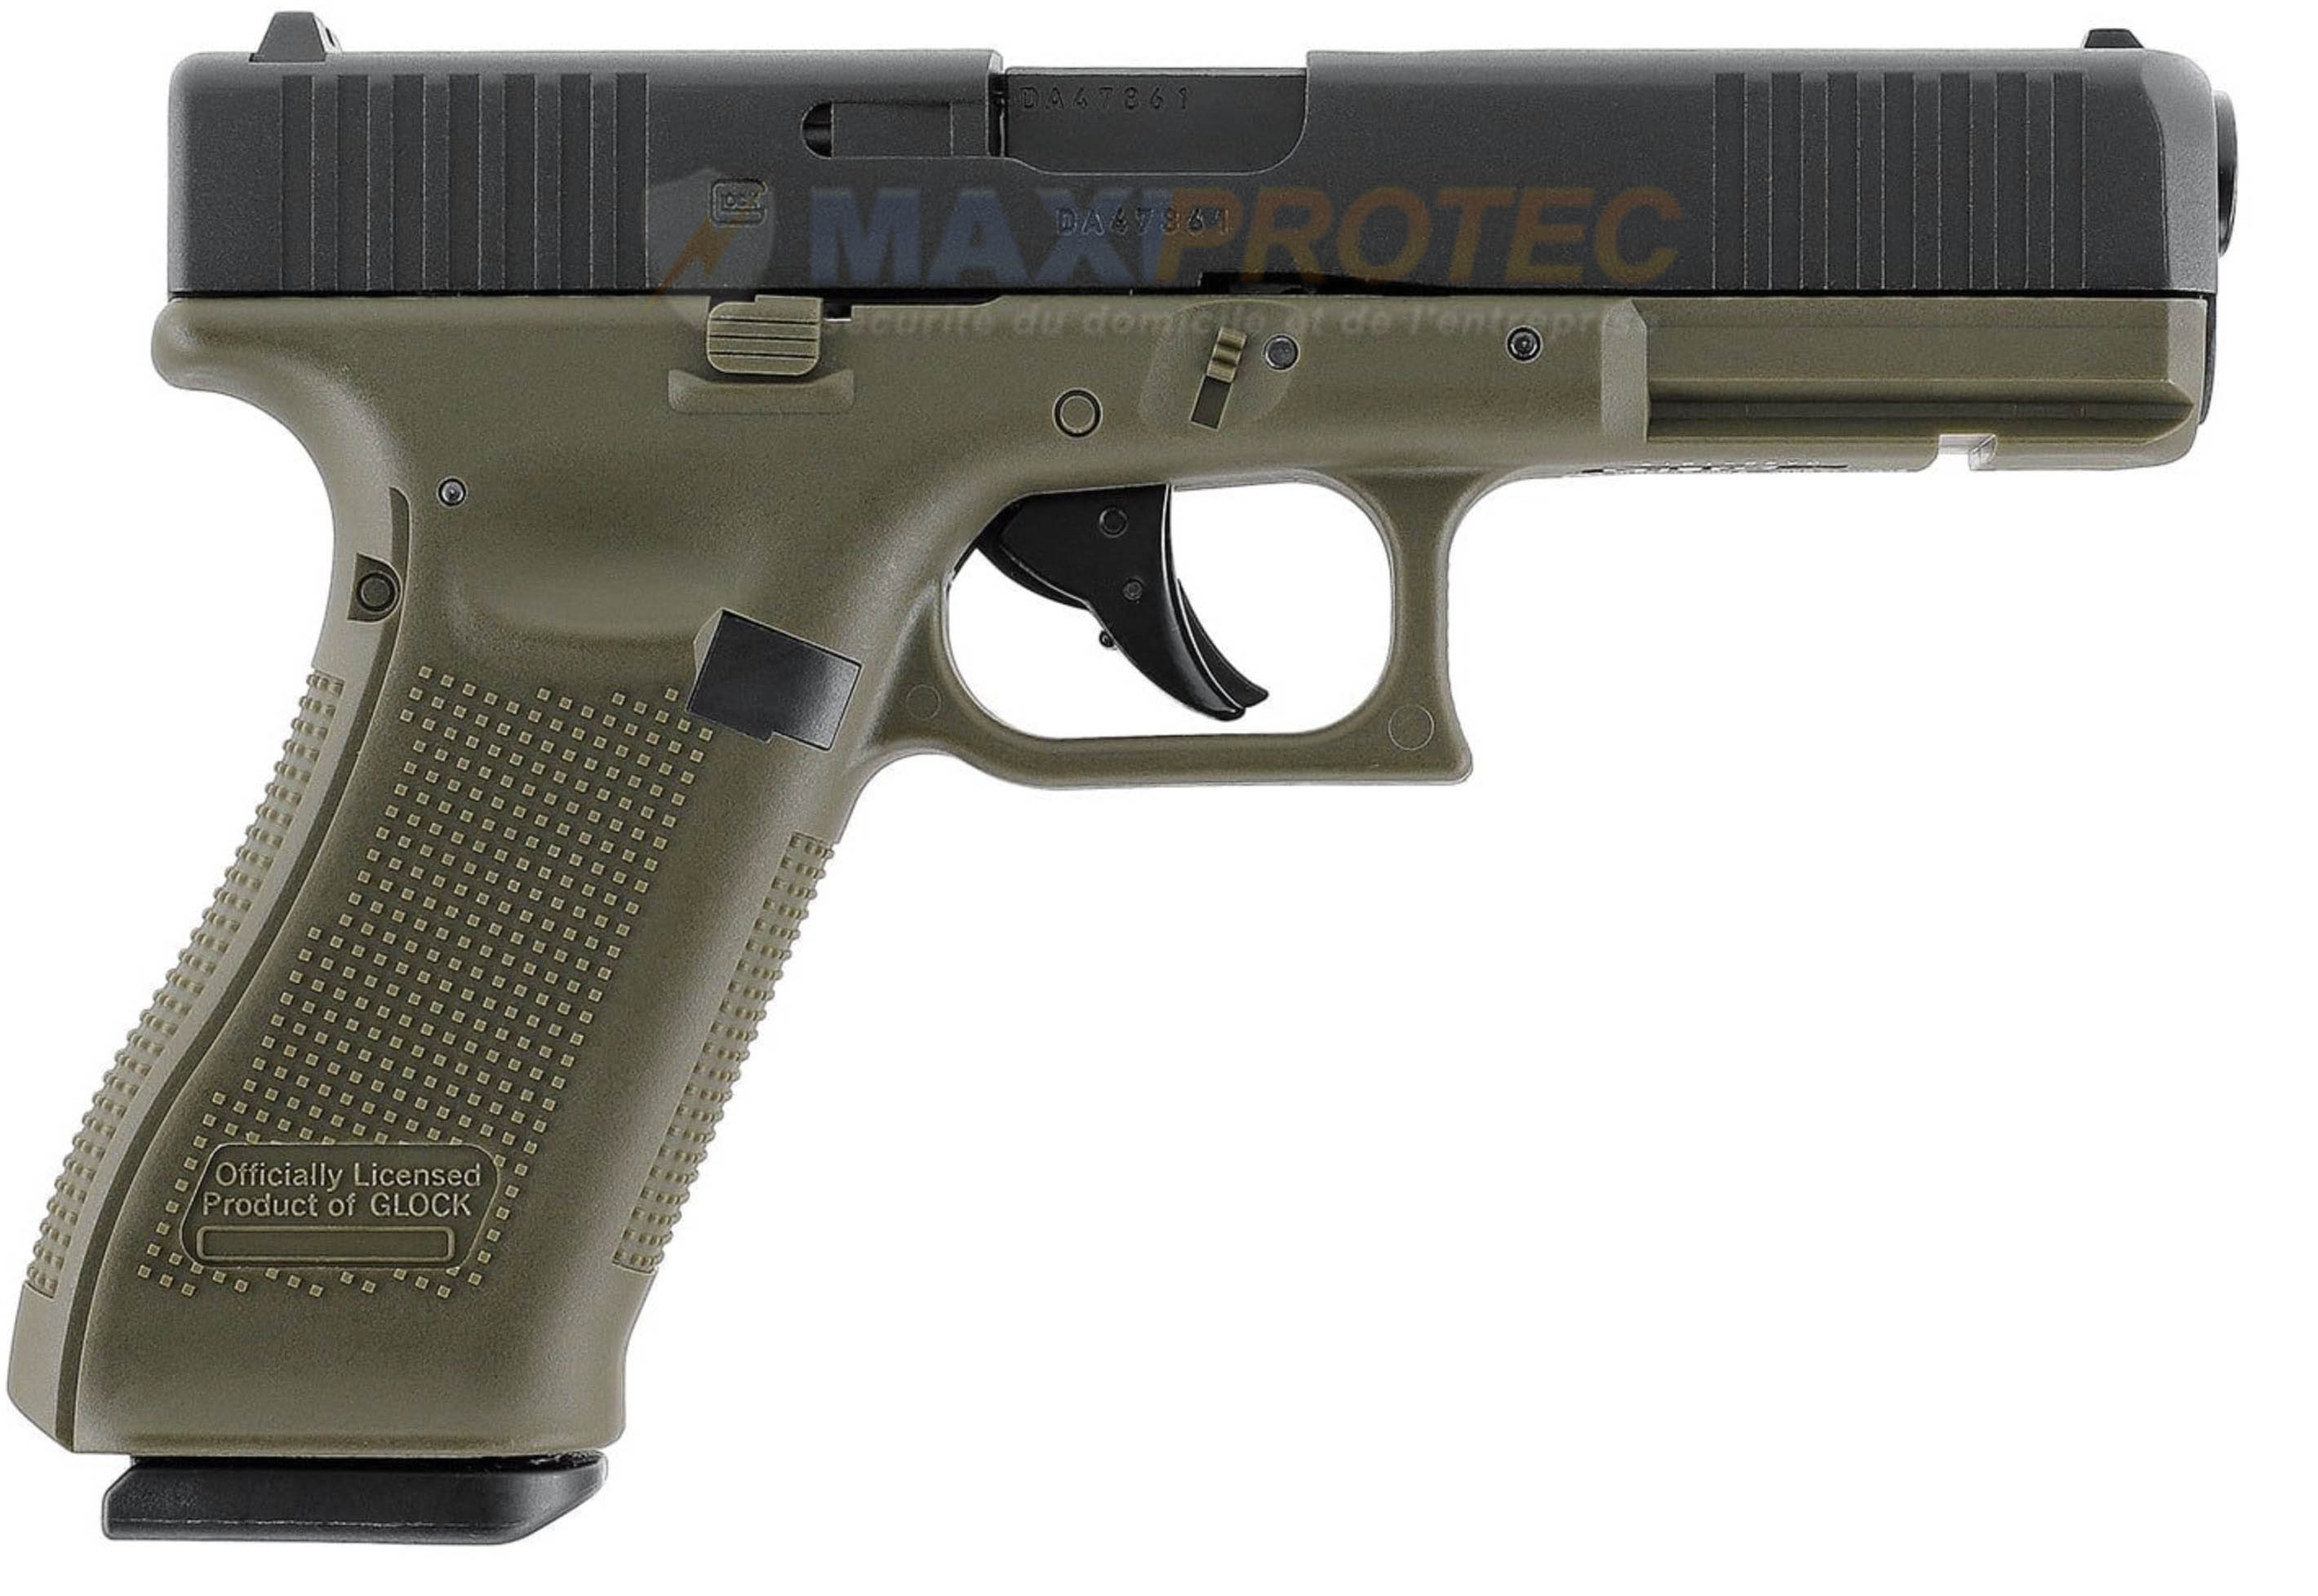 Détails de la sécurité et du chargeur du Glock 17